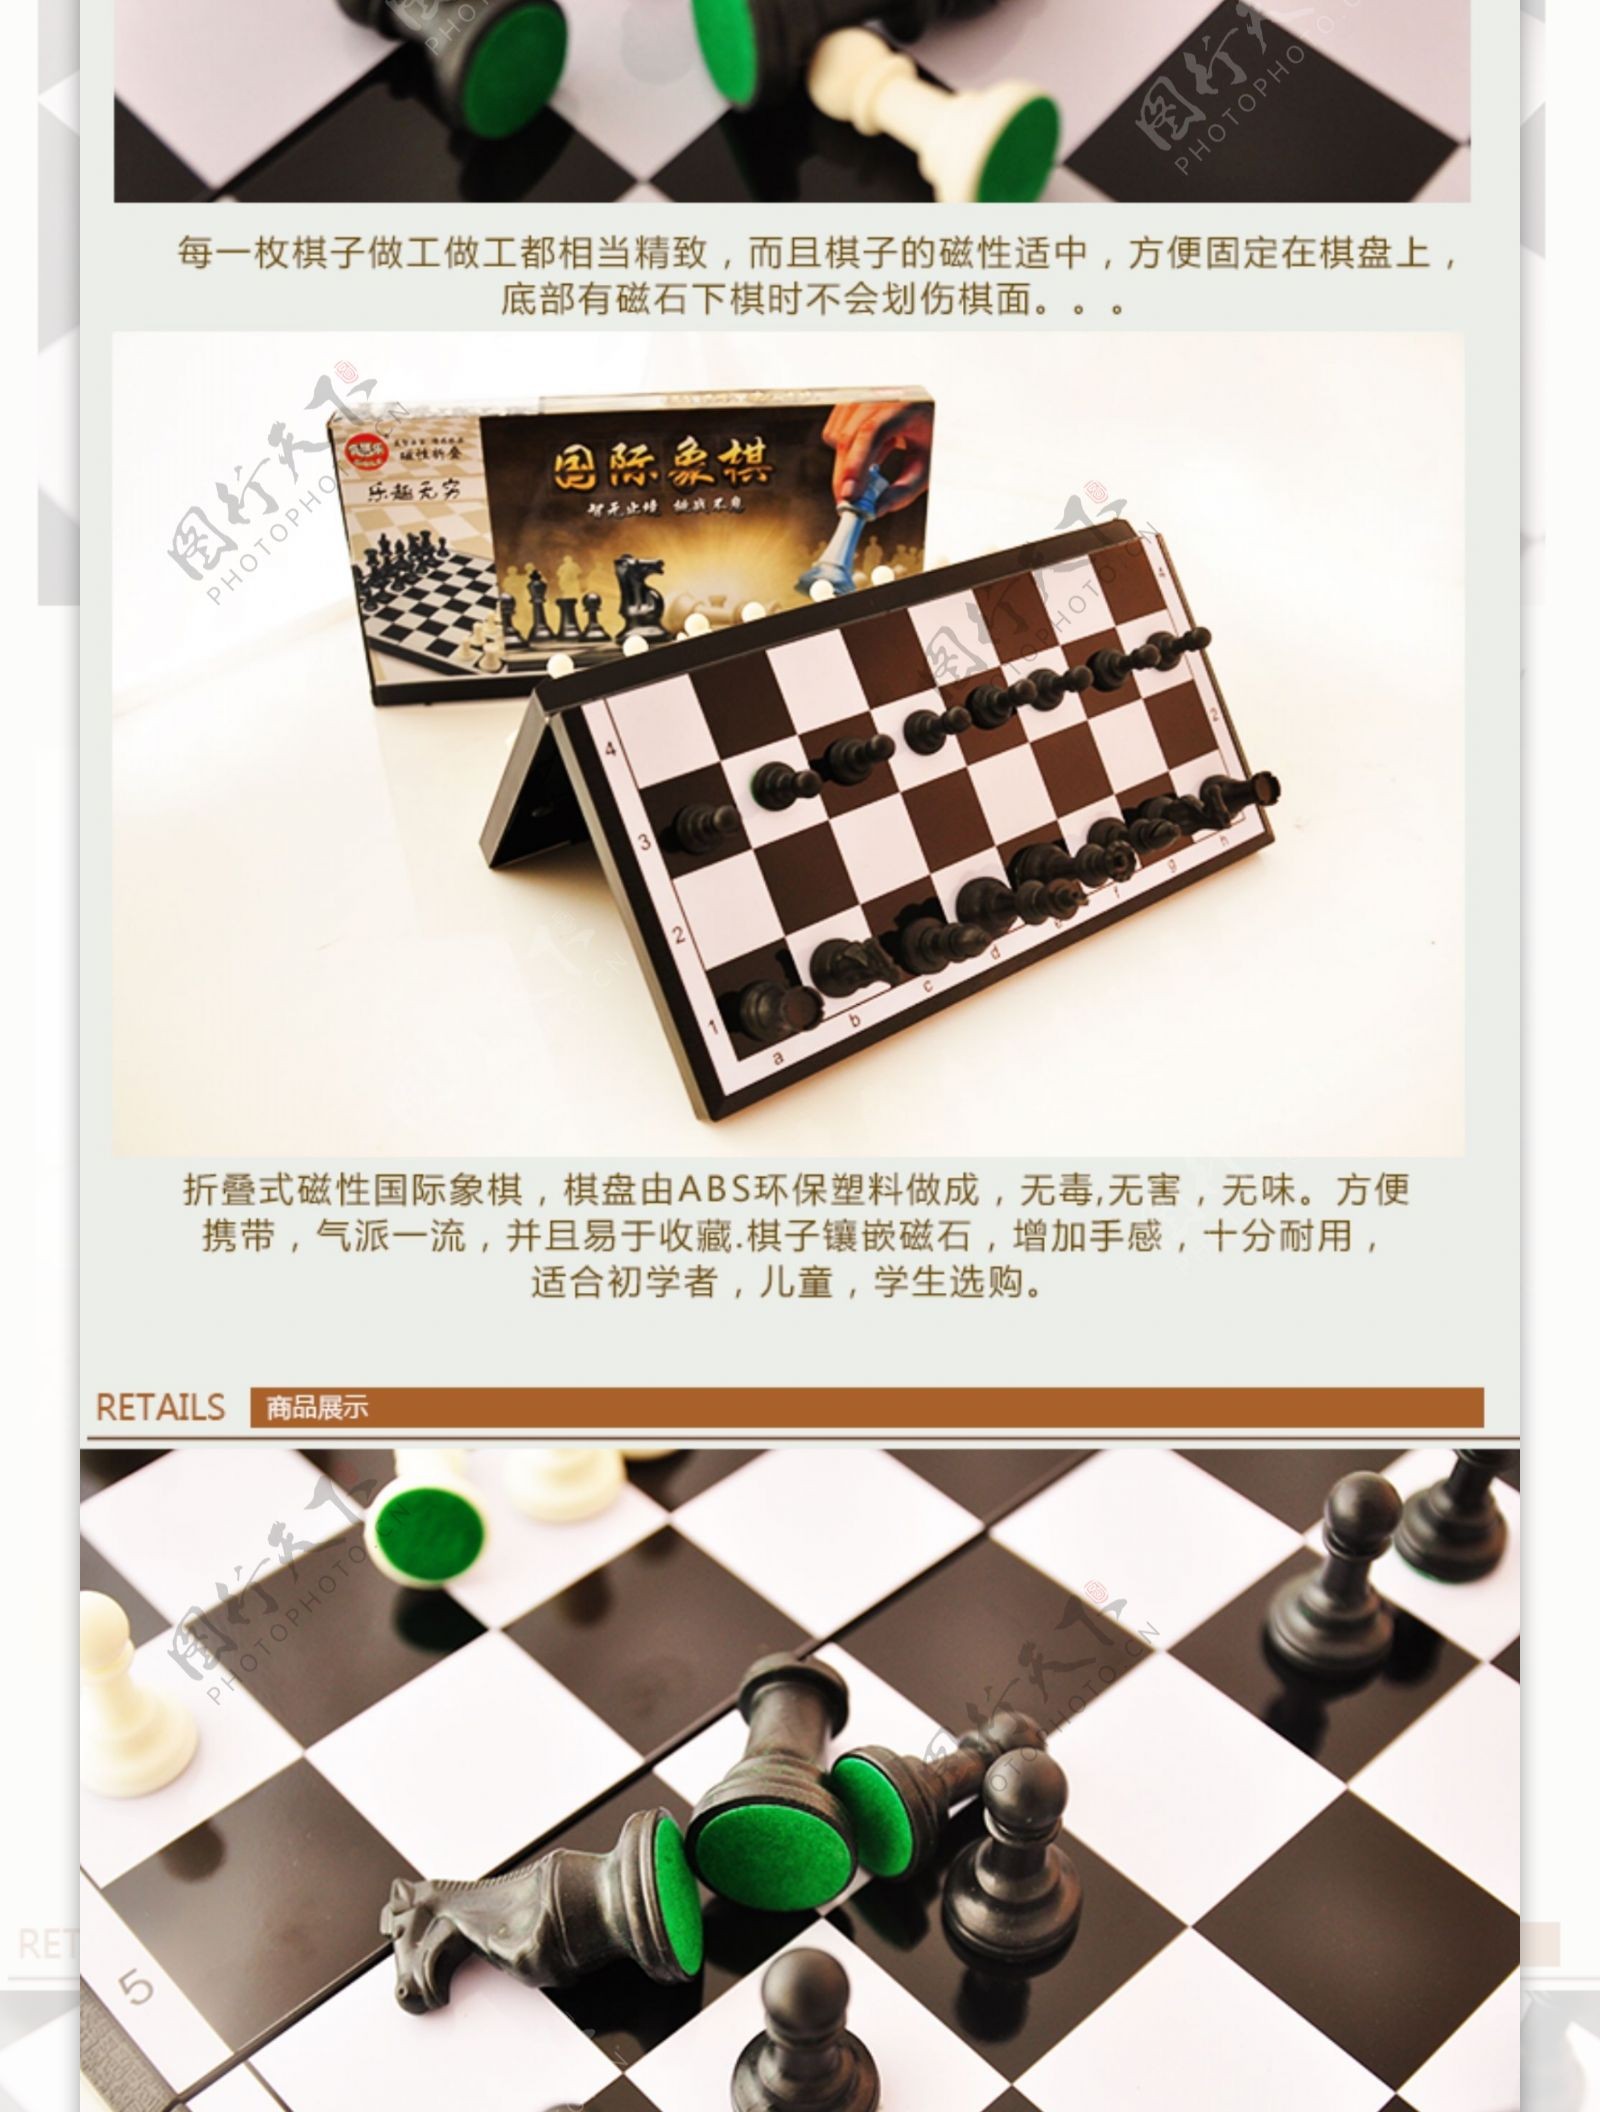 国际象棋详情页